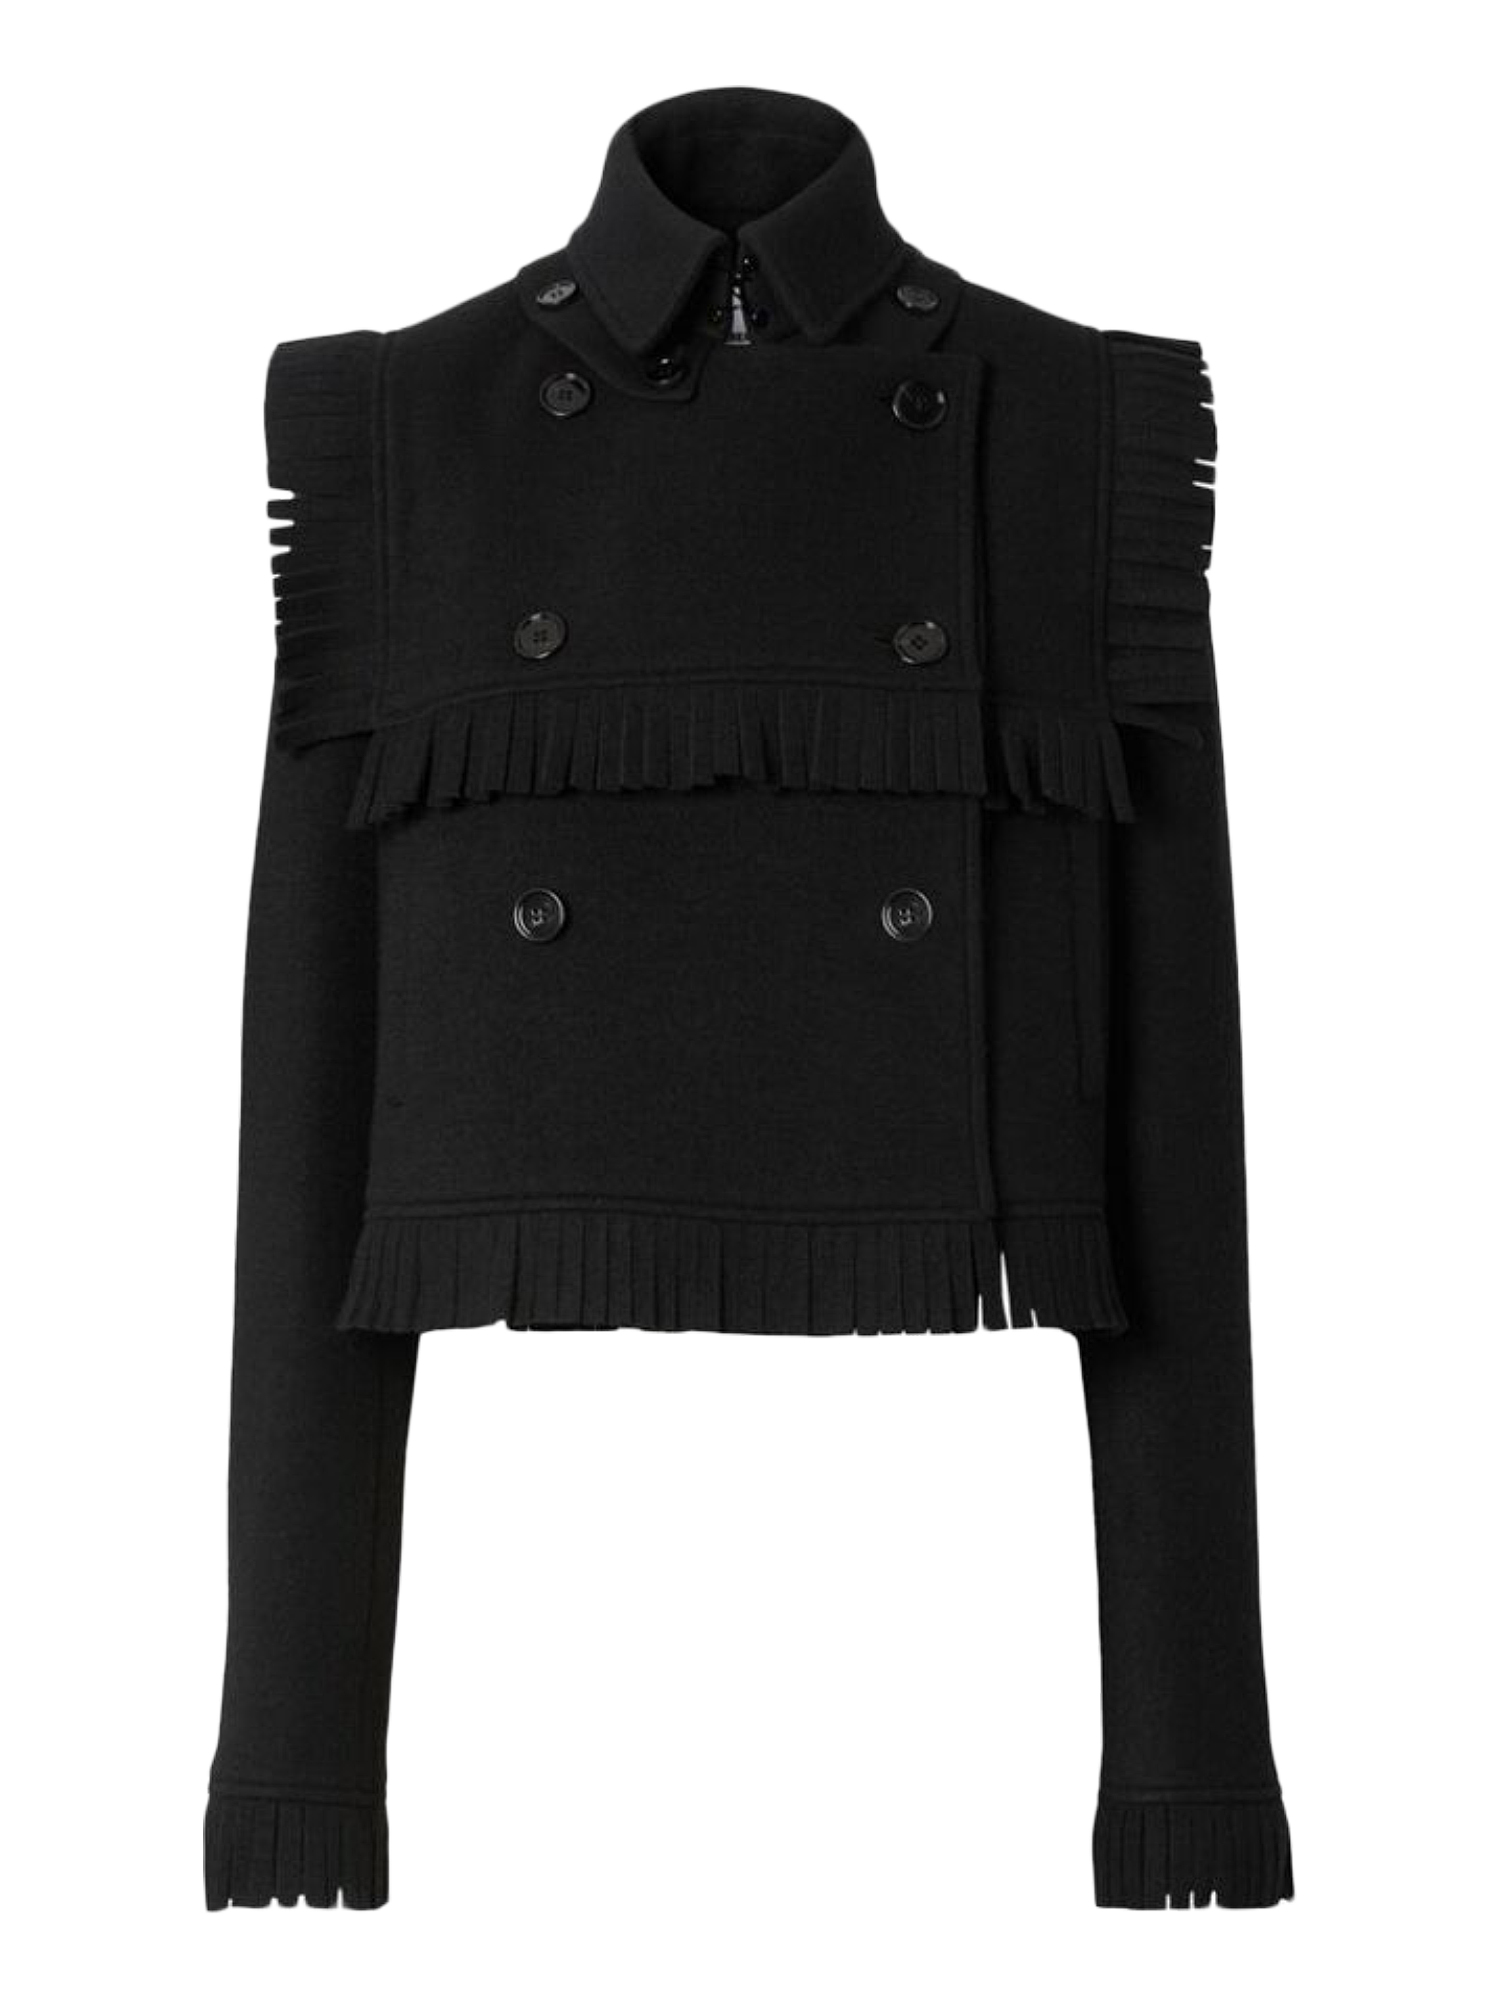 Vestes Pour Femme - Burberry - En Wool Black - Taille:  -